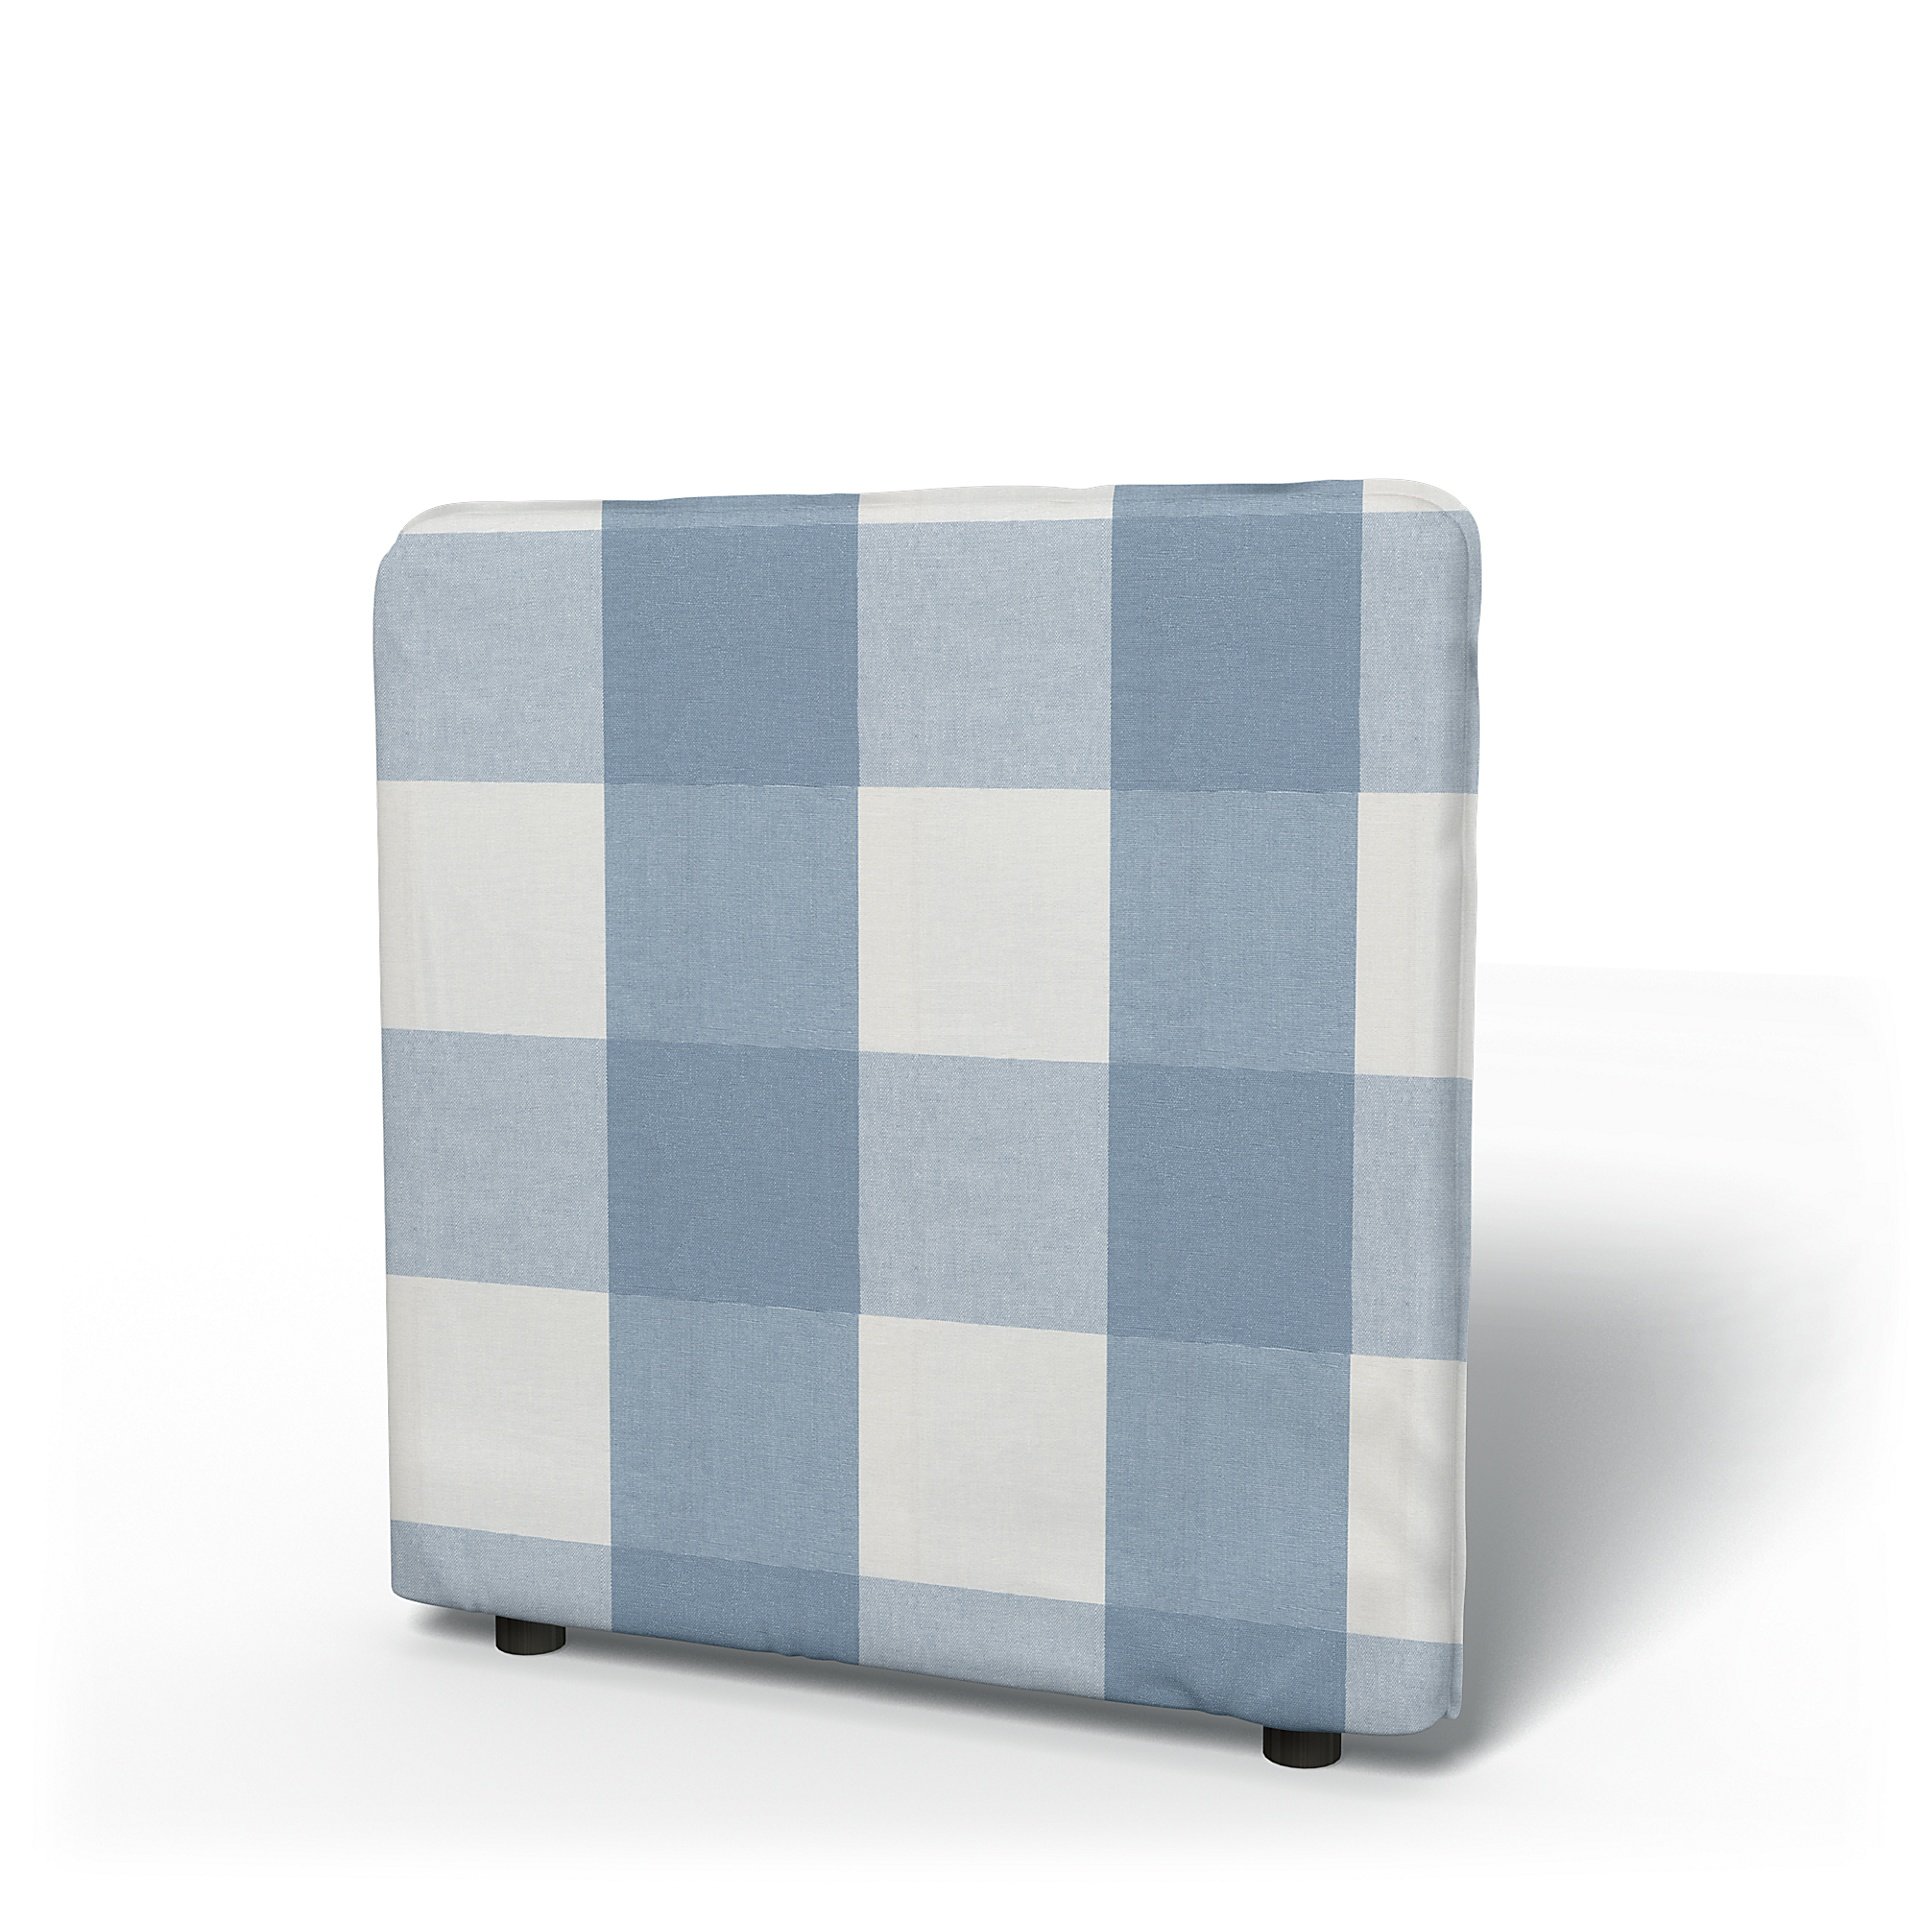 IKEA - Vallentuna Low Backrest Cover 80x80cm 32x32in, Sky Blue, Linen - Bemz